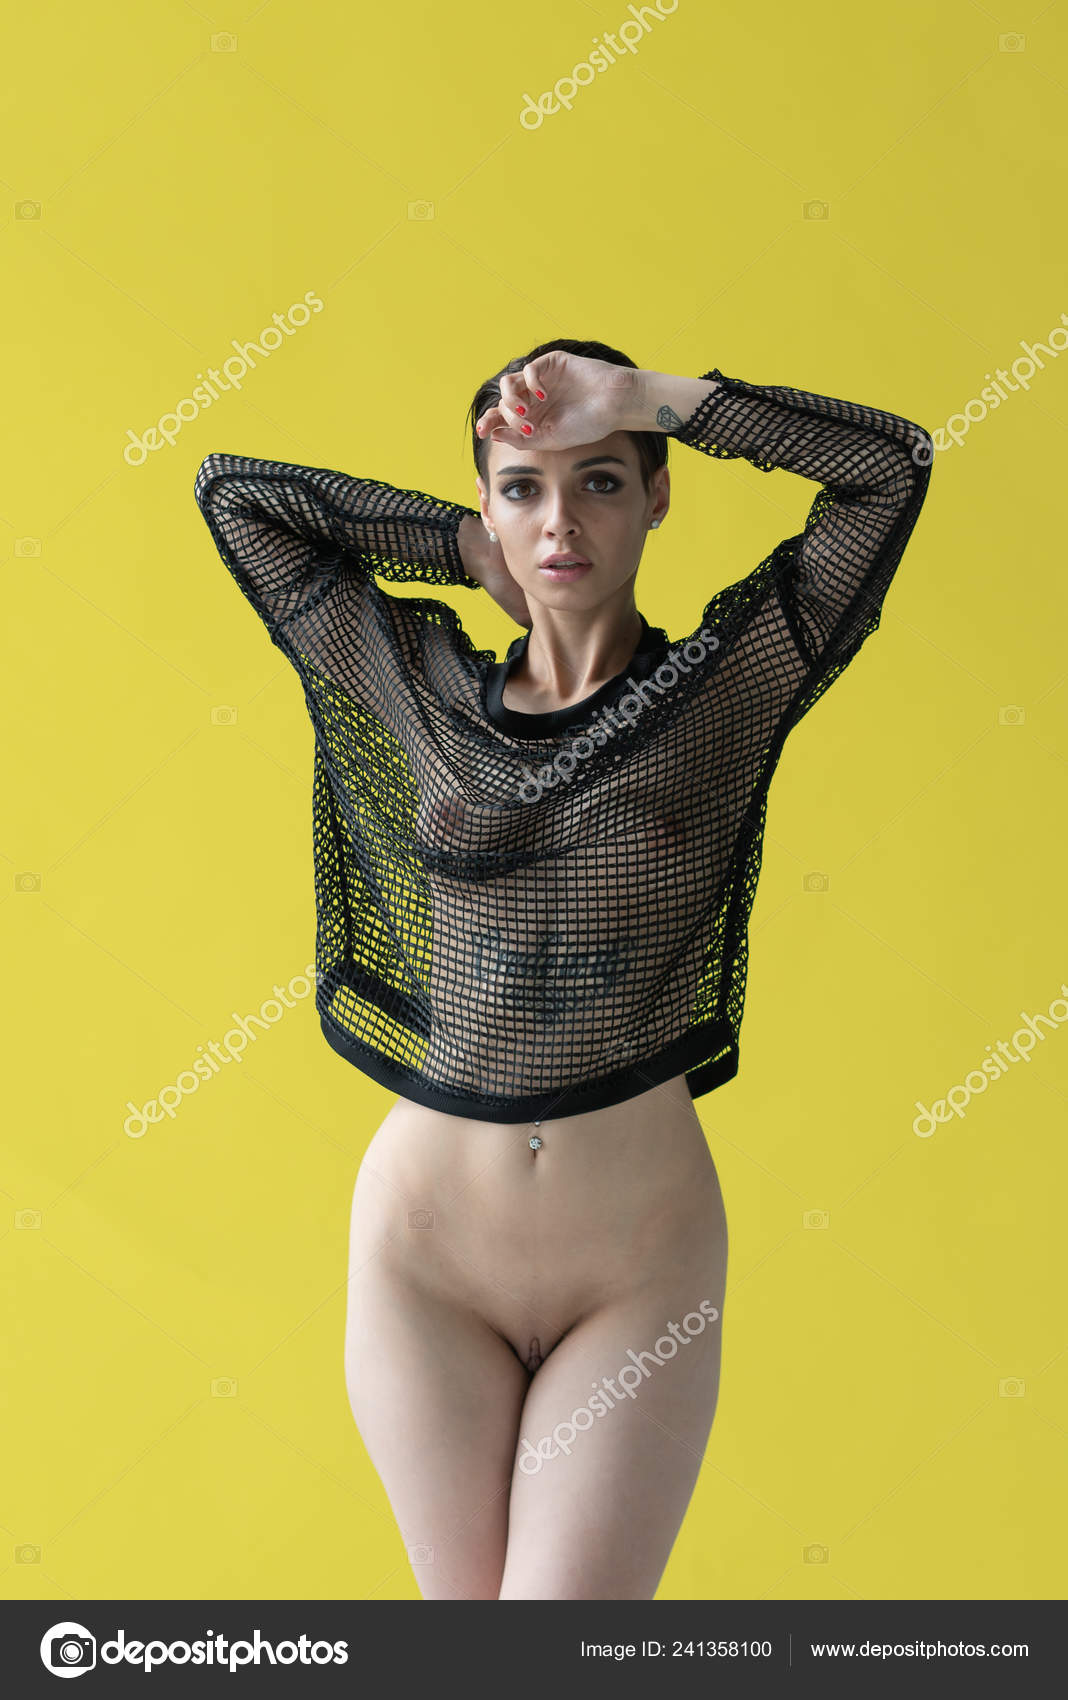 https://st4n.depositphotos.com/10086424/24135/i/1600/depositphotos_241358100-stock-photo-young-beautiful-girl-posing-nude.jpg